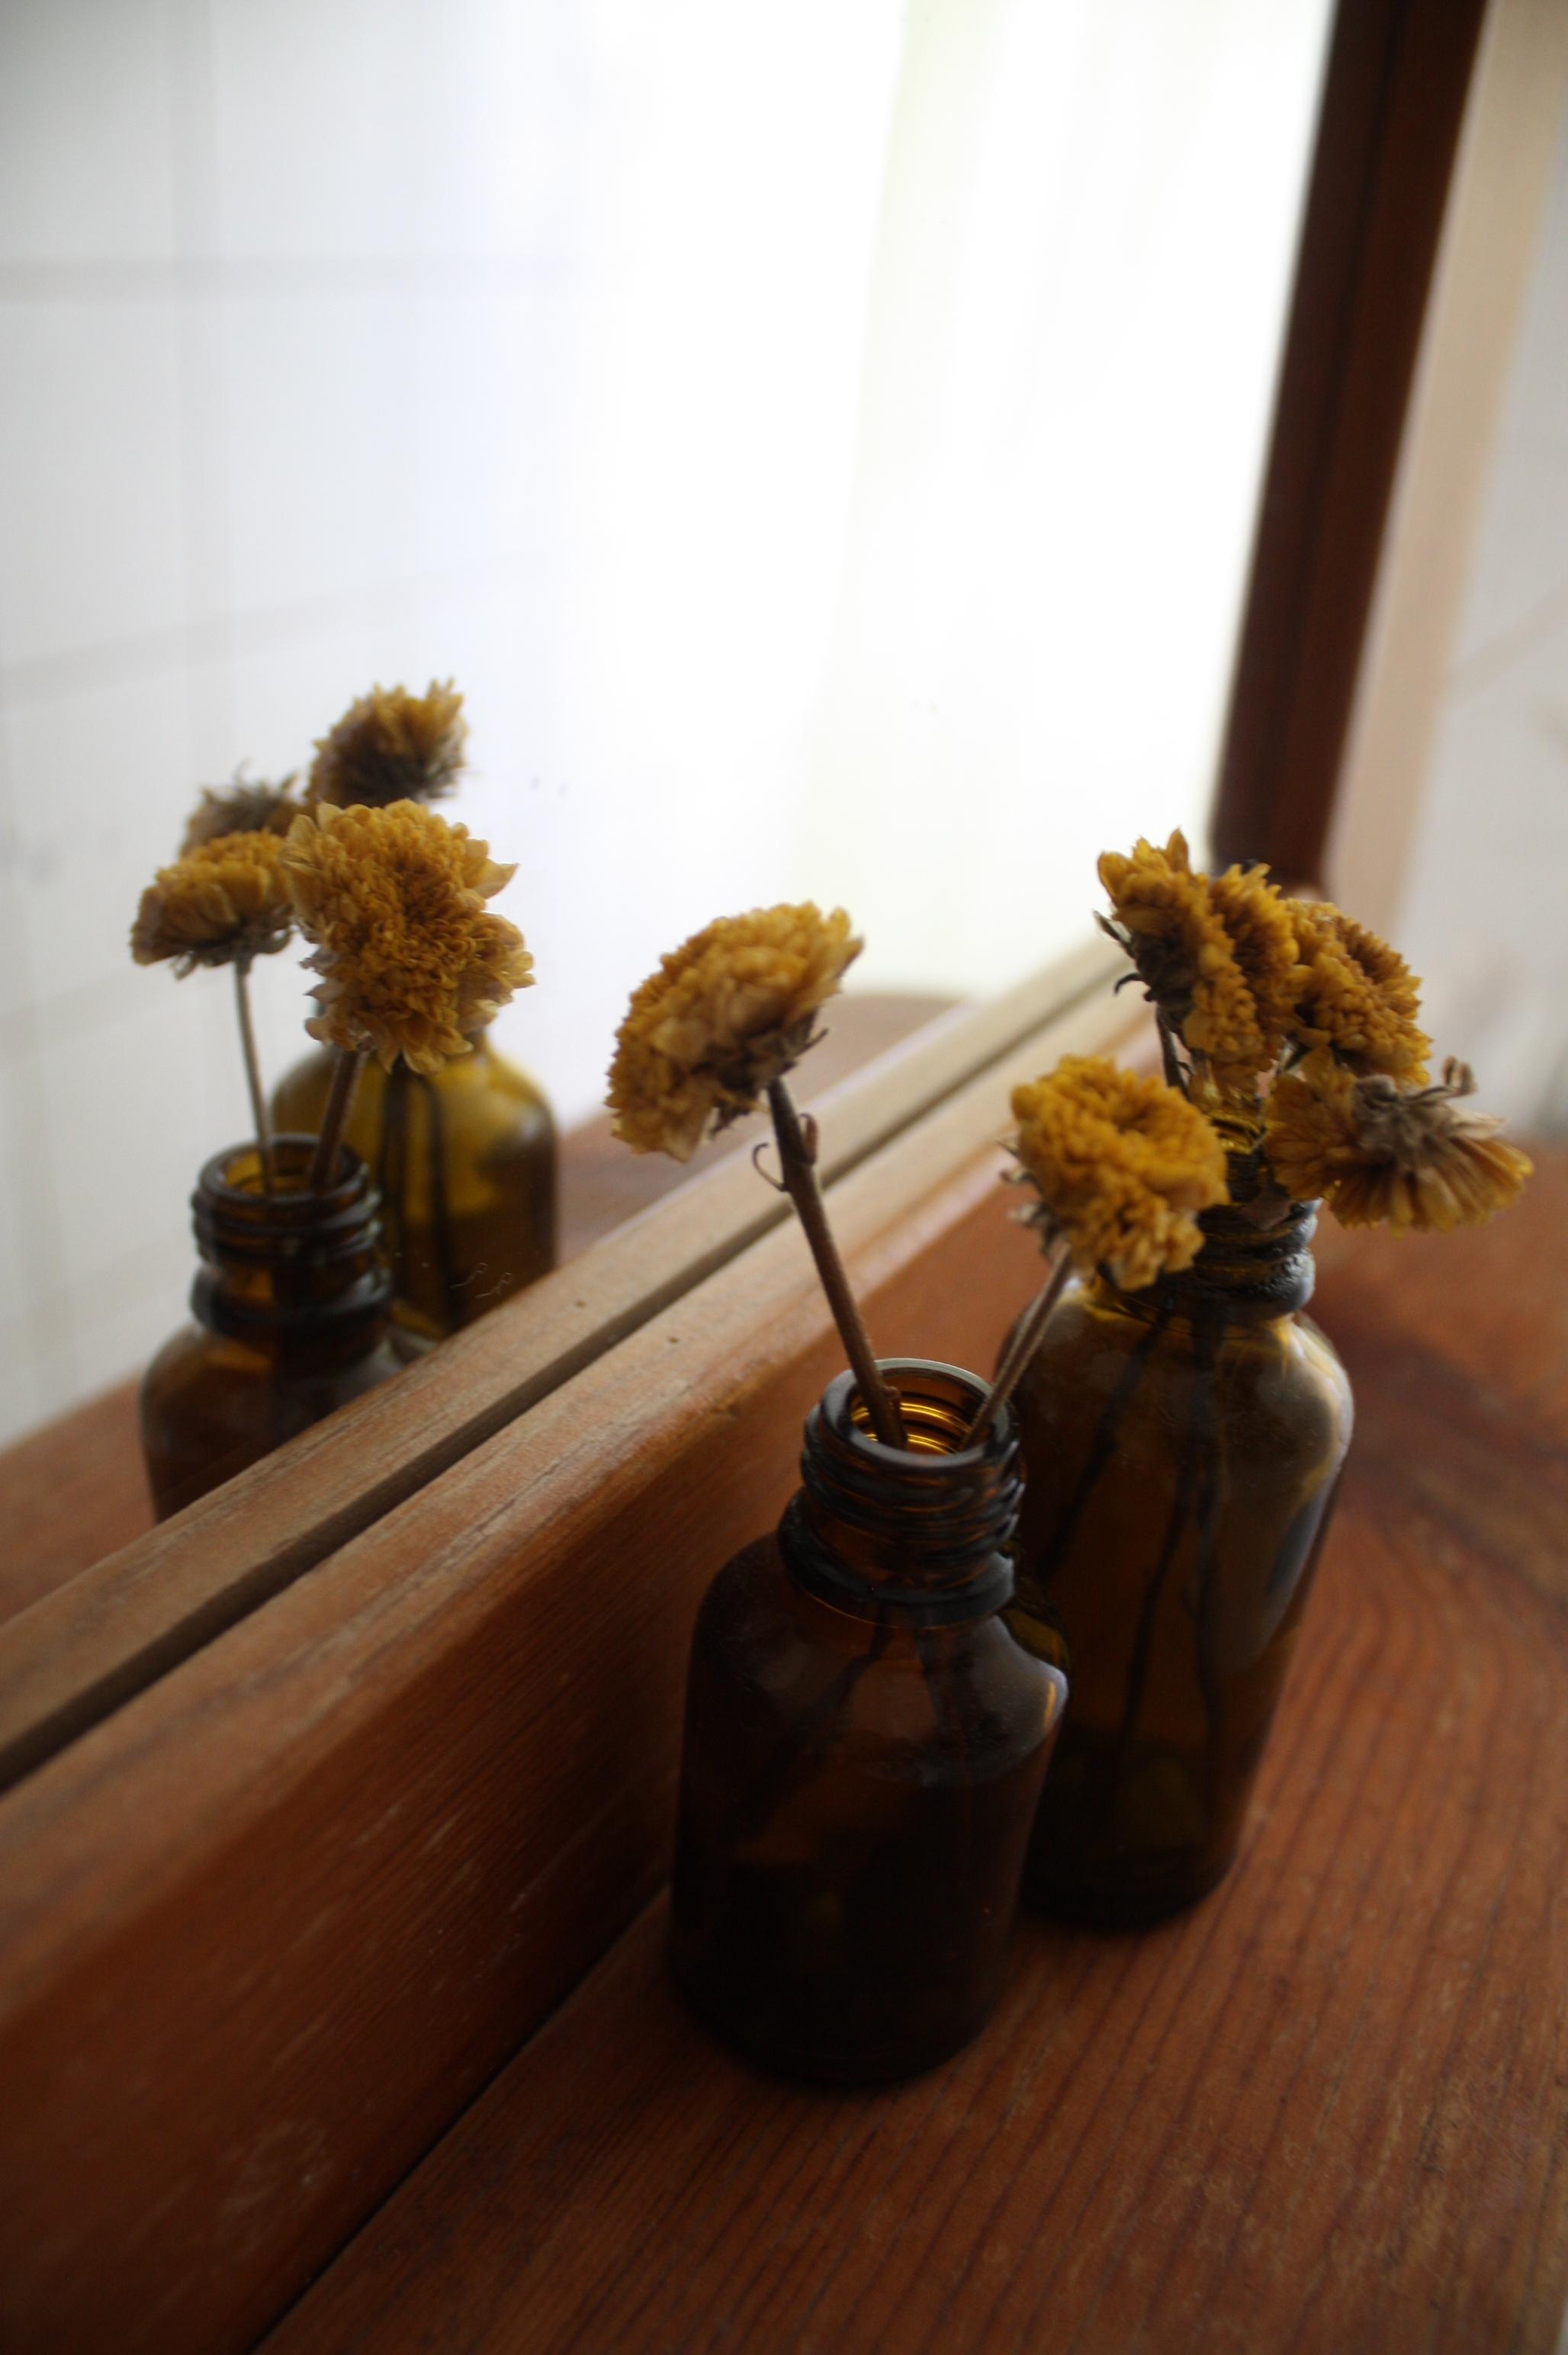 Badezimmerzeit.
#Trockenblumen #Altglas #senfgelb #holz #vintage